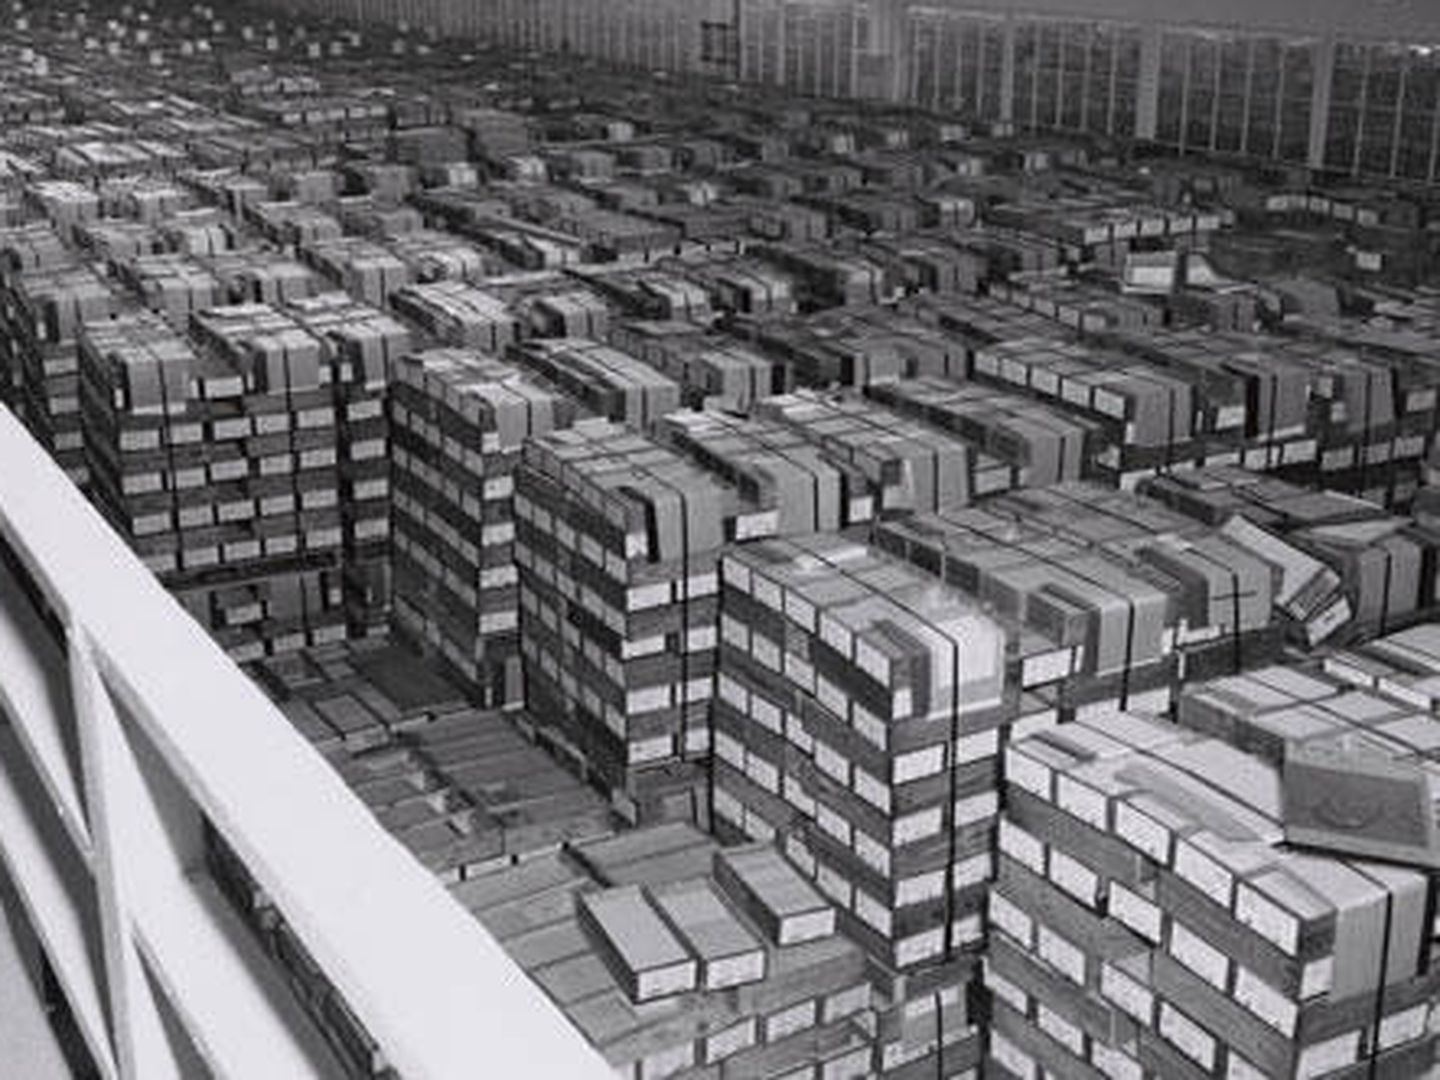 Almacén de IBM con cajas de tarjetas perforadas una vez terminada la Segunda Guerra Mundial. (Wikimedia Commons)